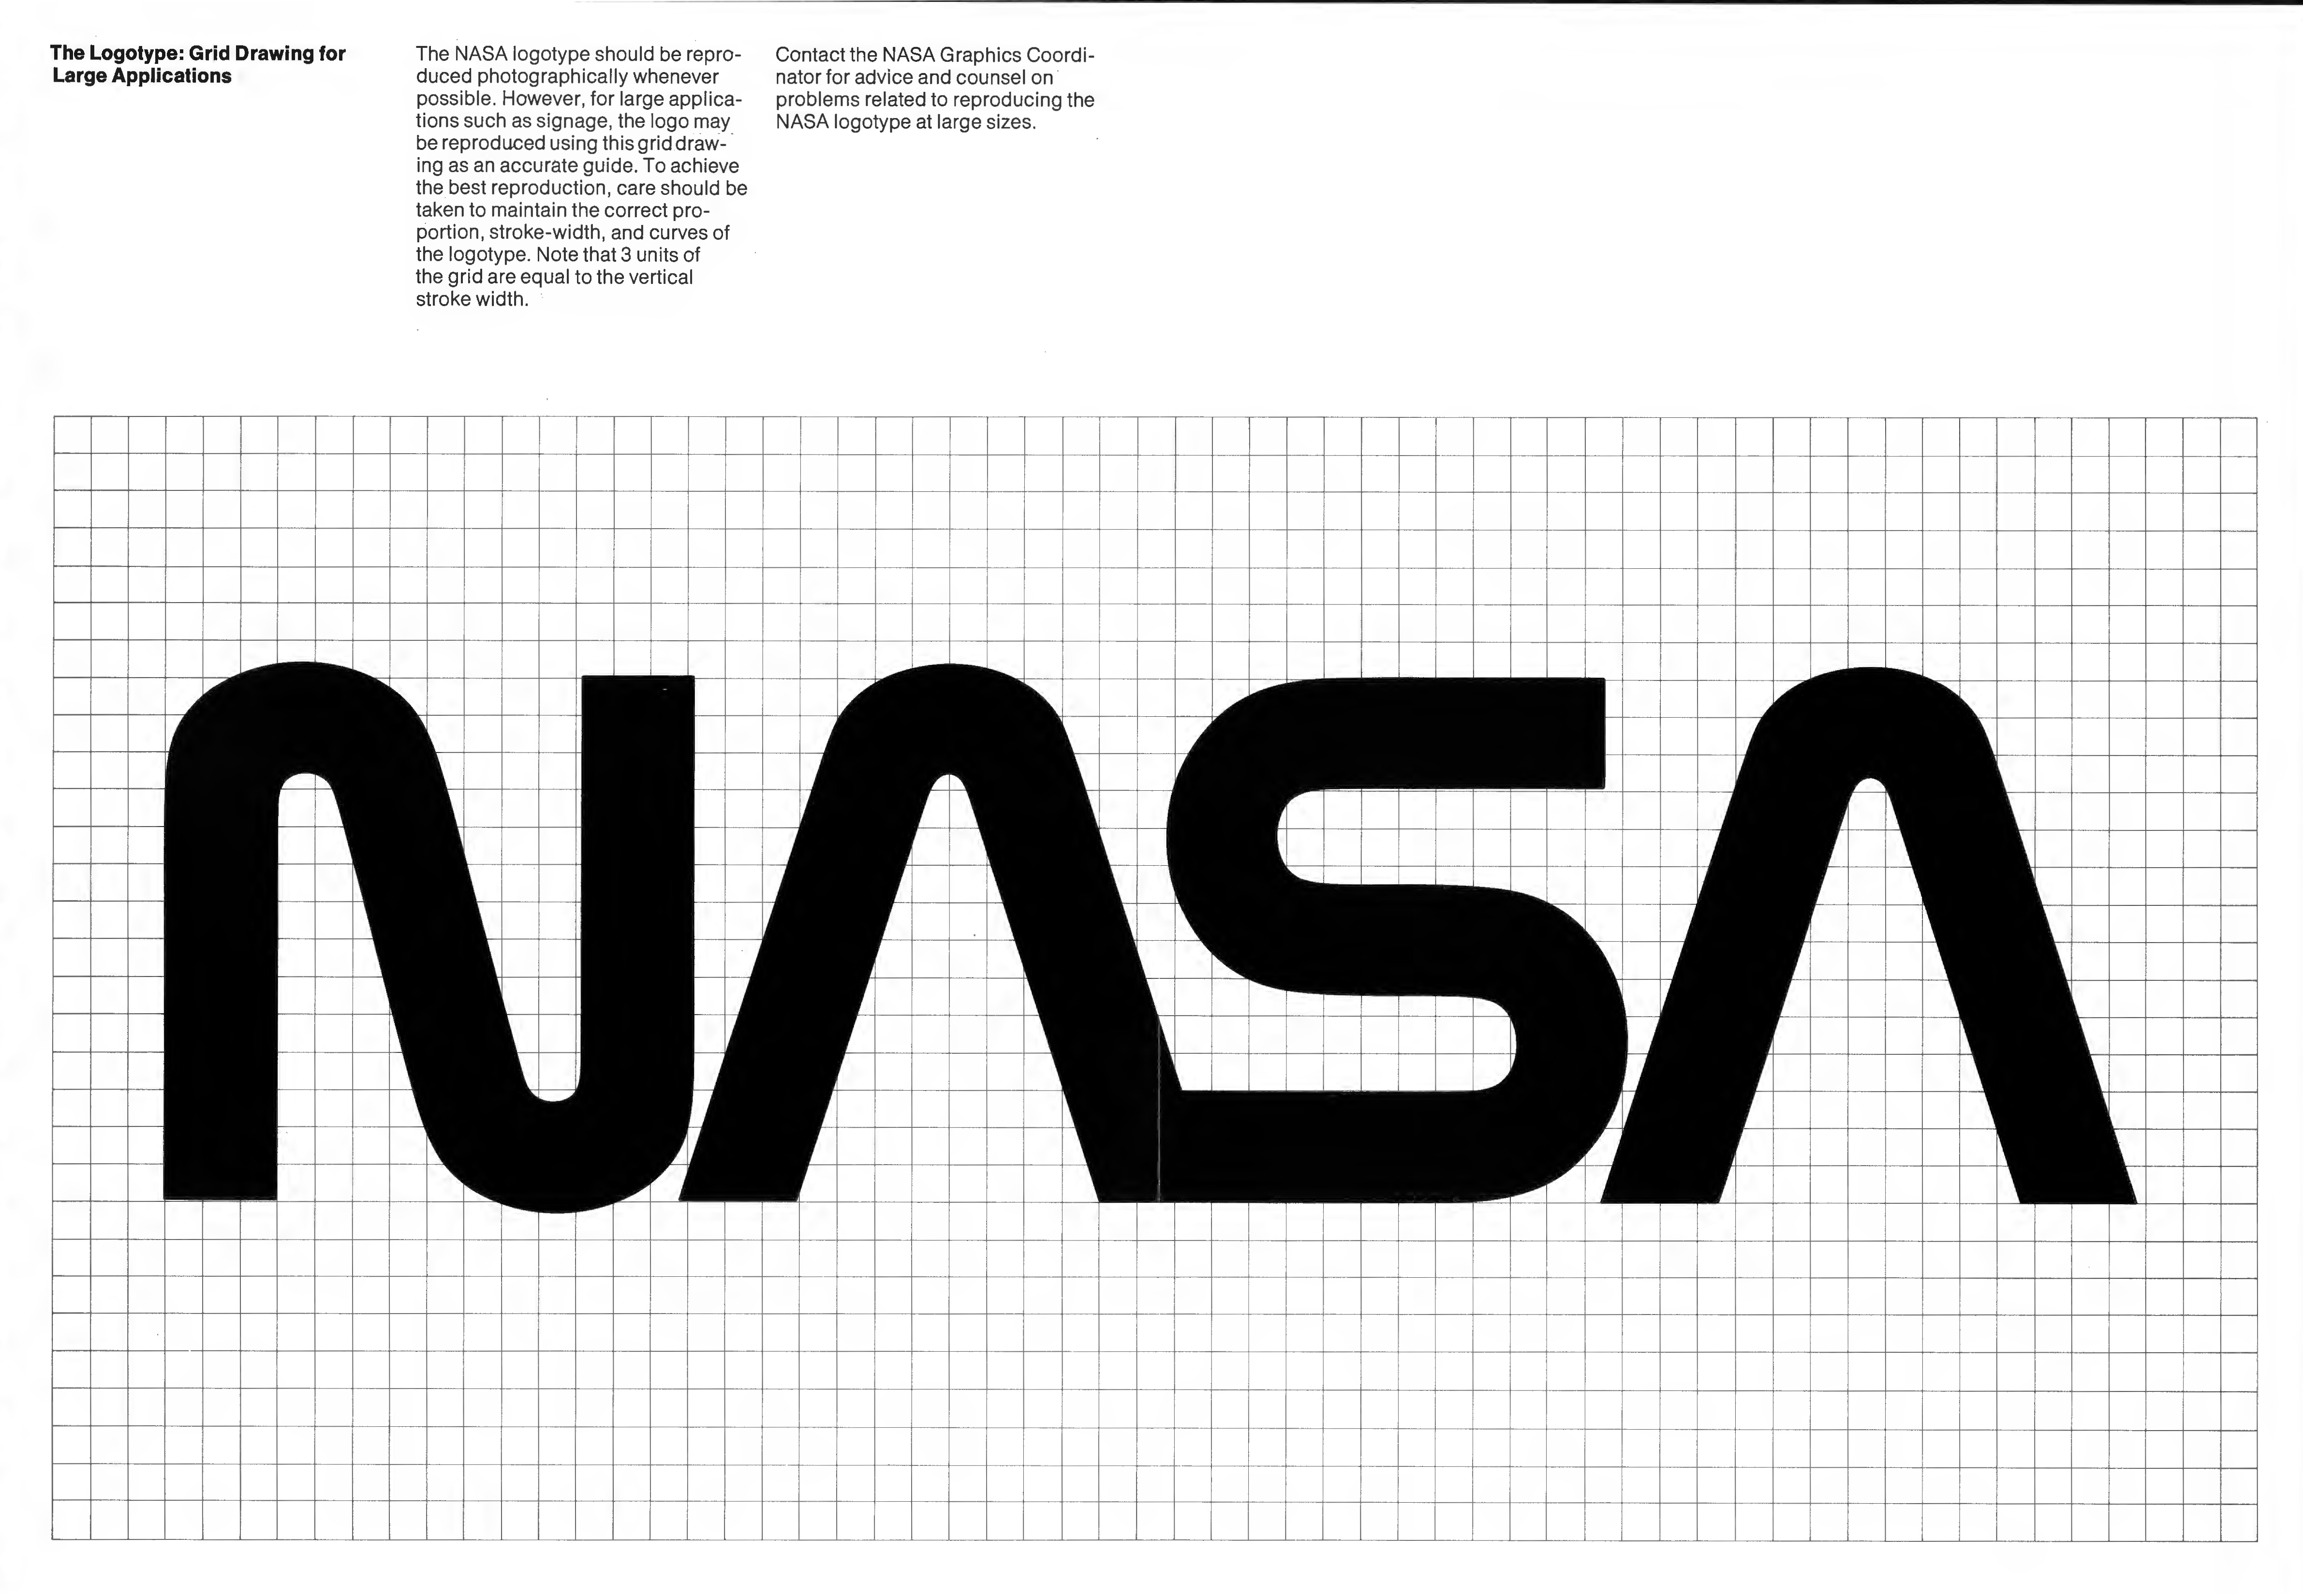 Le guide de style graphique de la Nasa des années 70